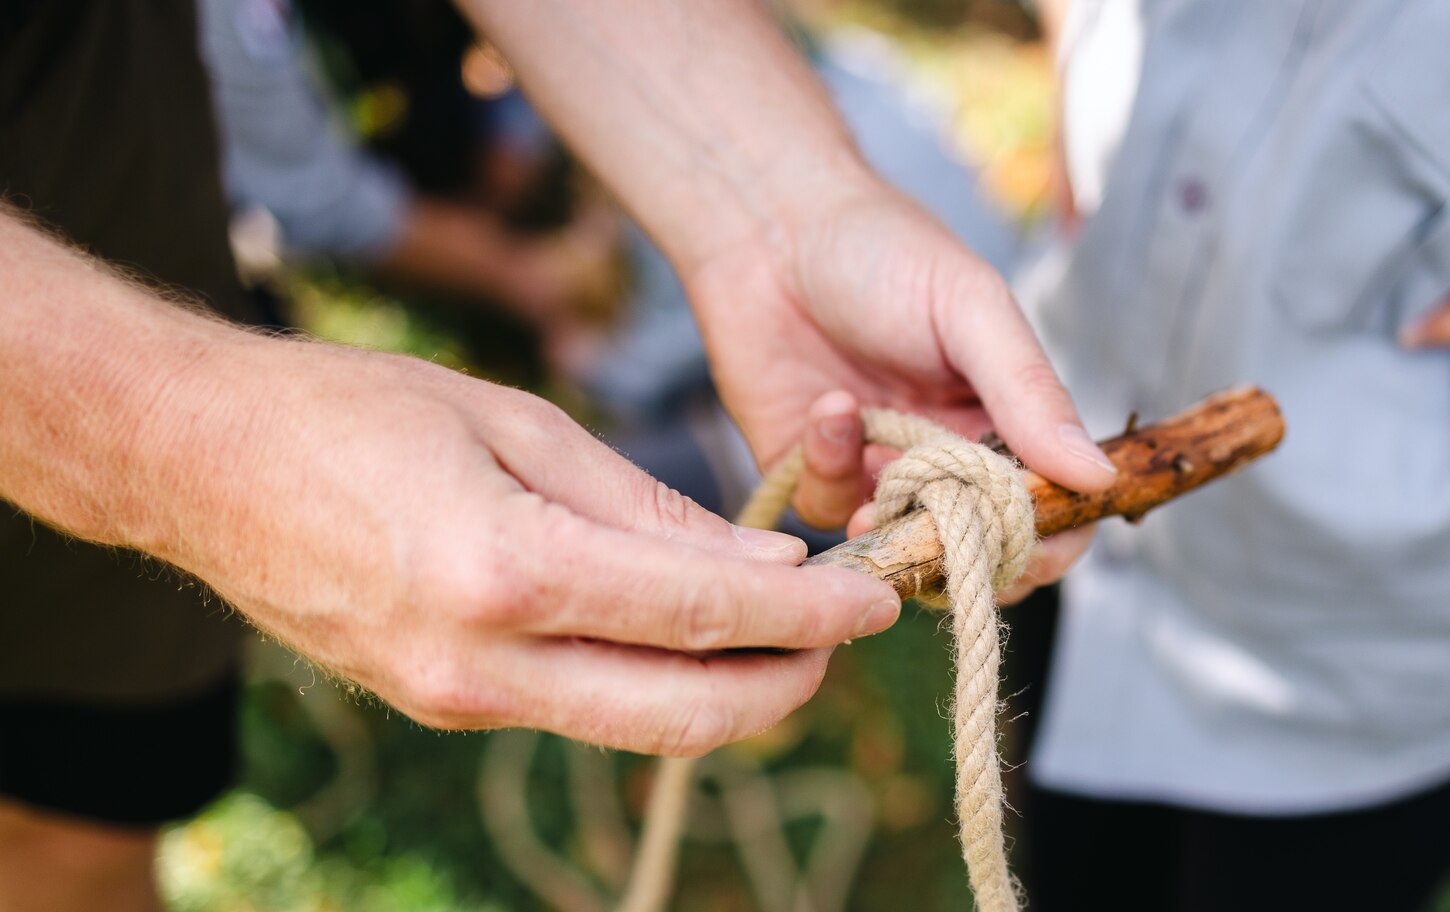 Eine Person zeigt einem Pfadfinderkind in Mülsen St. Micheln, wie ein Knoten gebunden wird. Detailaufnahme der Hände, die ein Seil um einen Stock wickeln.